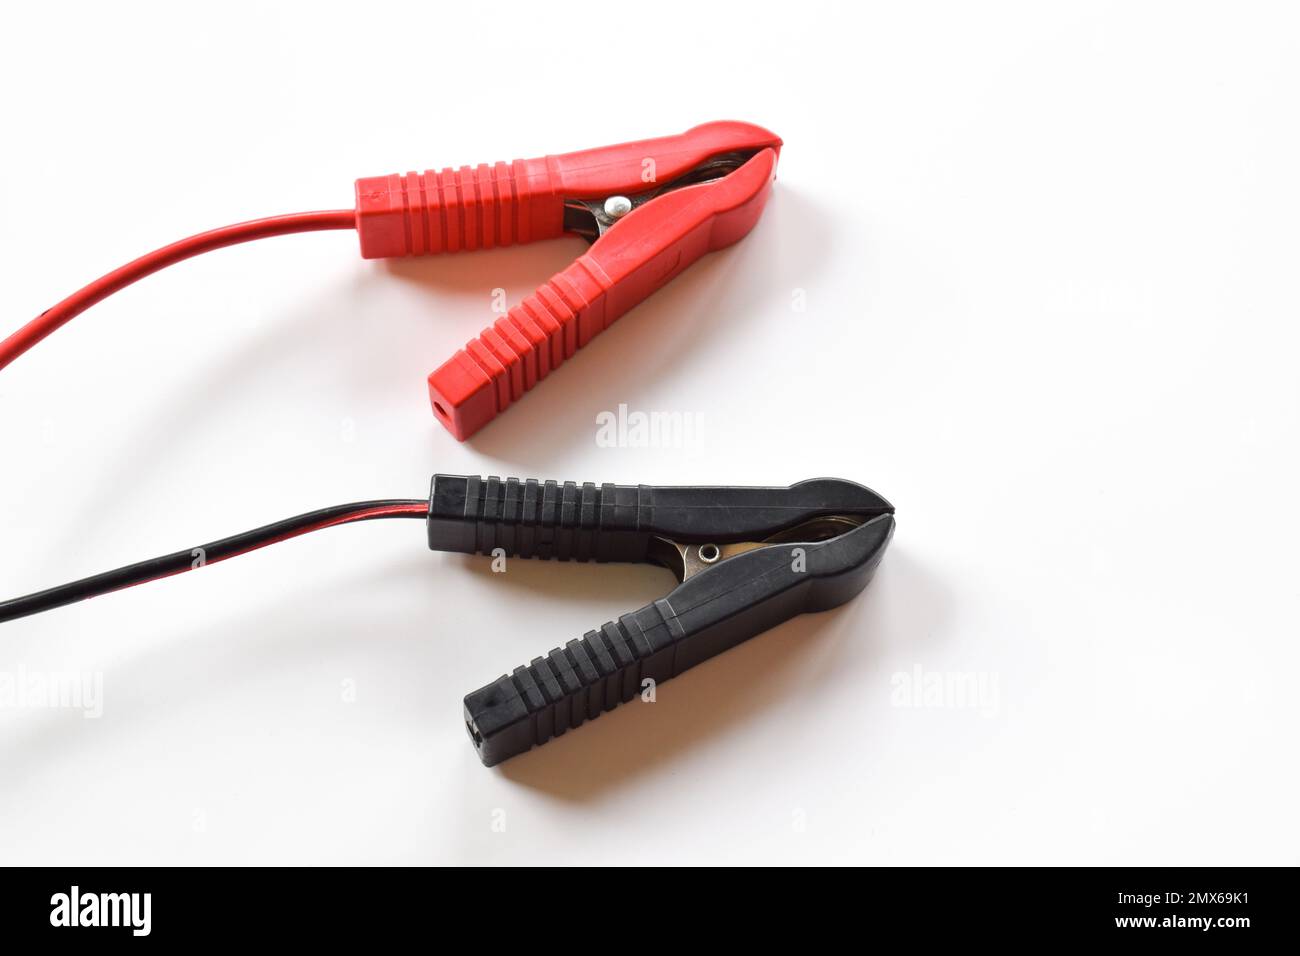 Auto Batterieklemmen und Jumper-Kabel isoliert auf weißem Hintergrund  Stockfotografie - Alamy